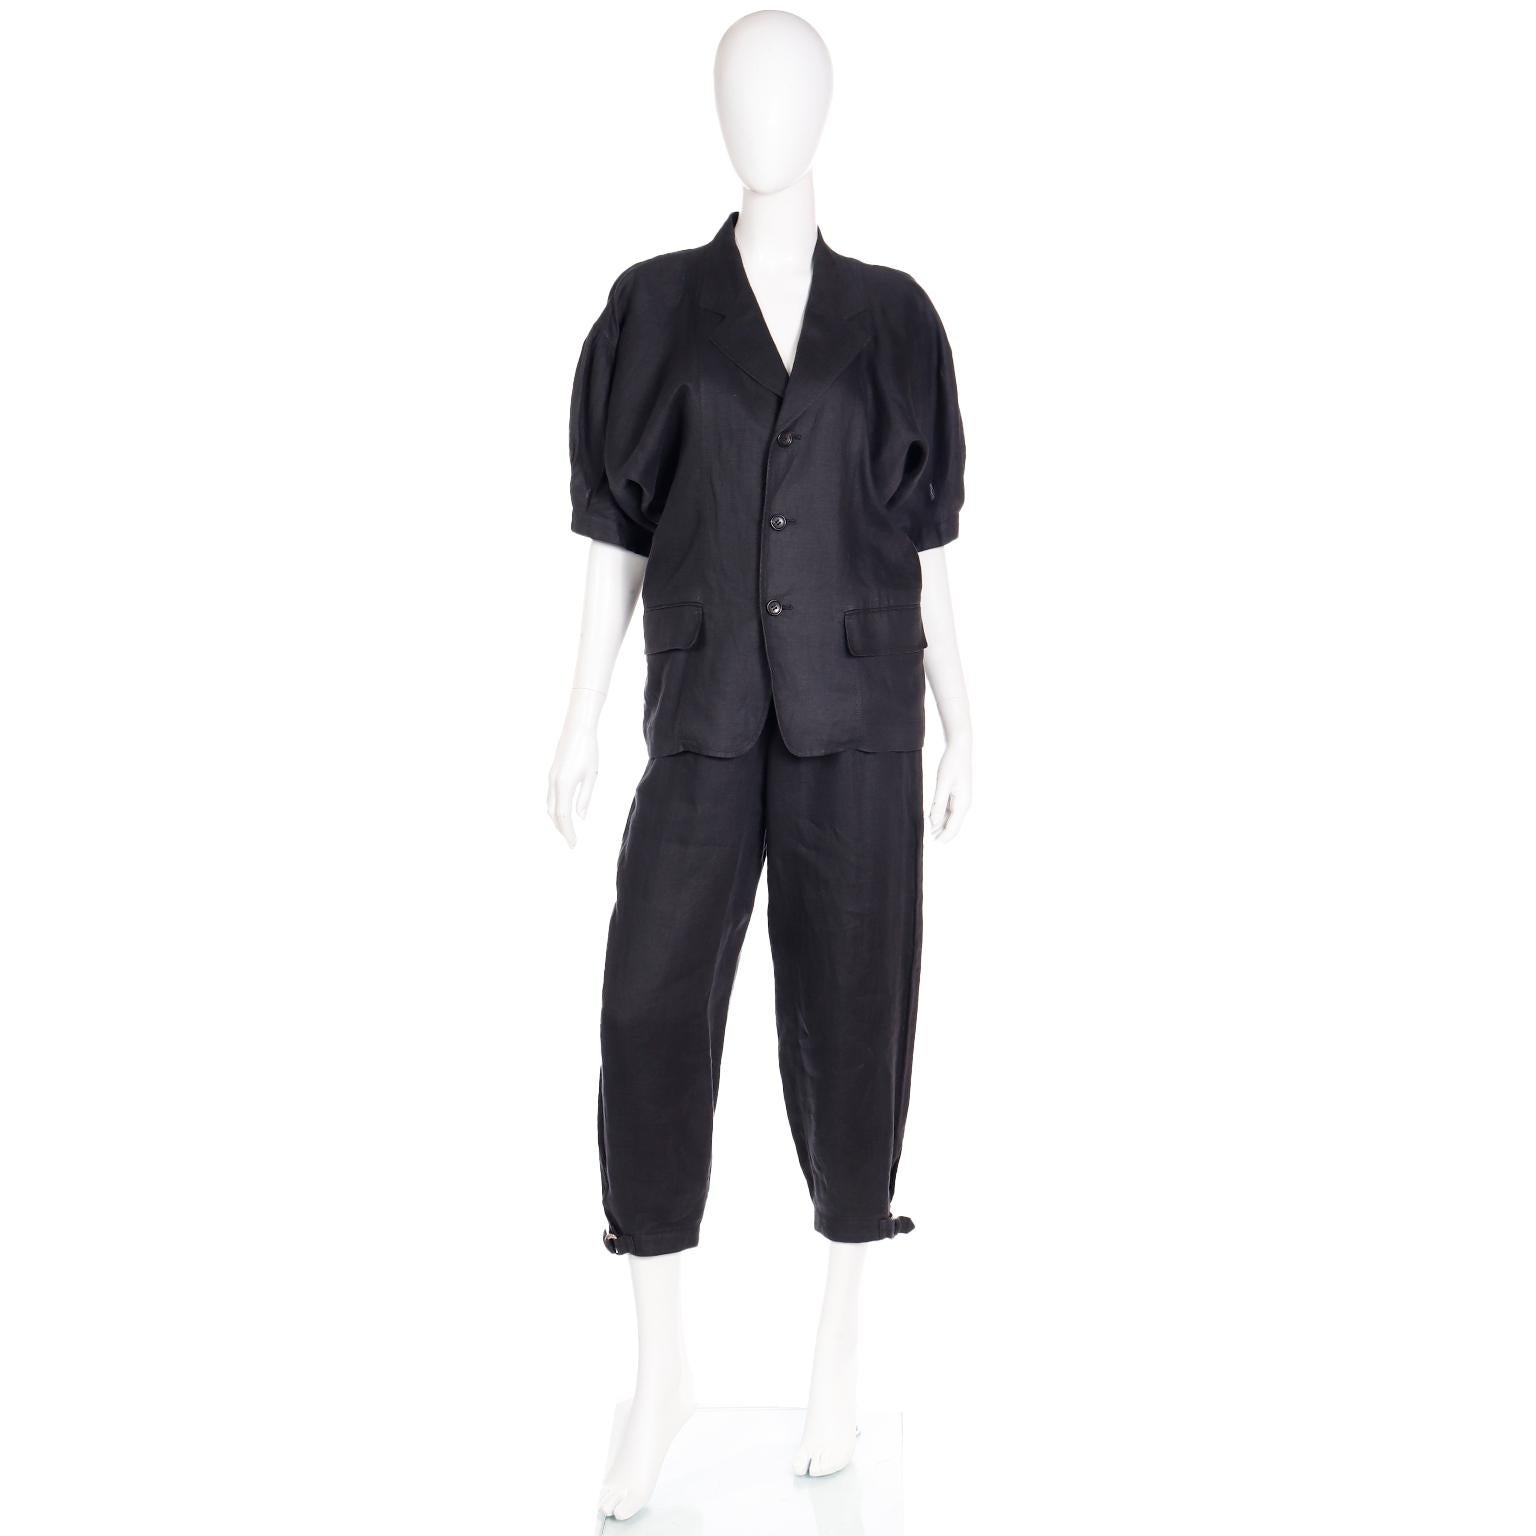 Comme des Garcons S/S 1989 Vintage Black Linen Jacket & Pants Outfit For Sale 5